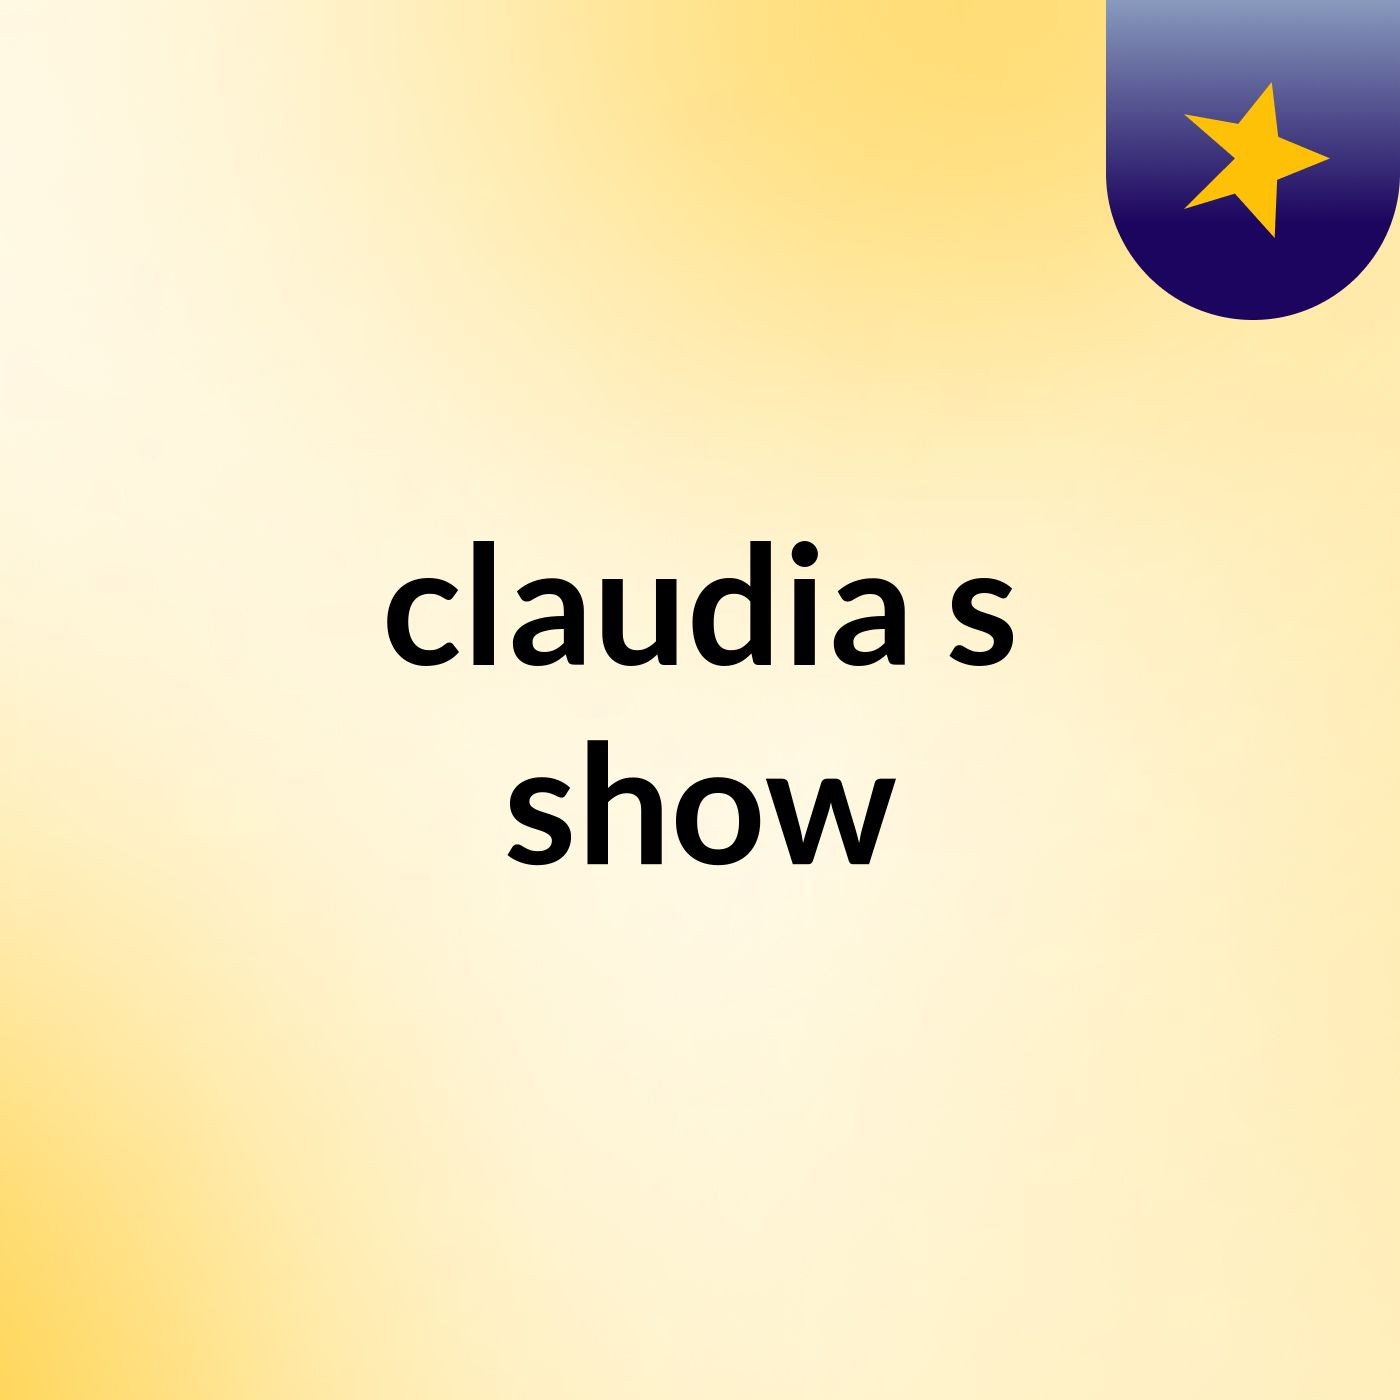 claudia's show